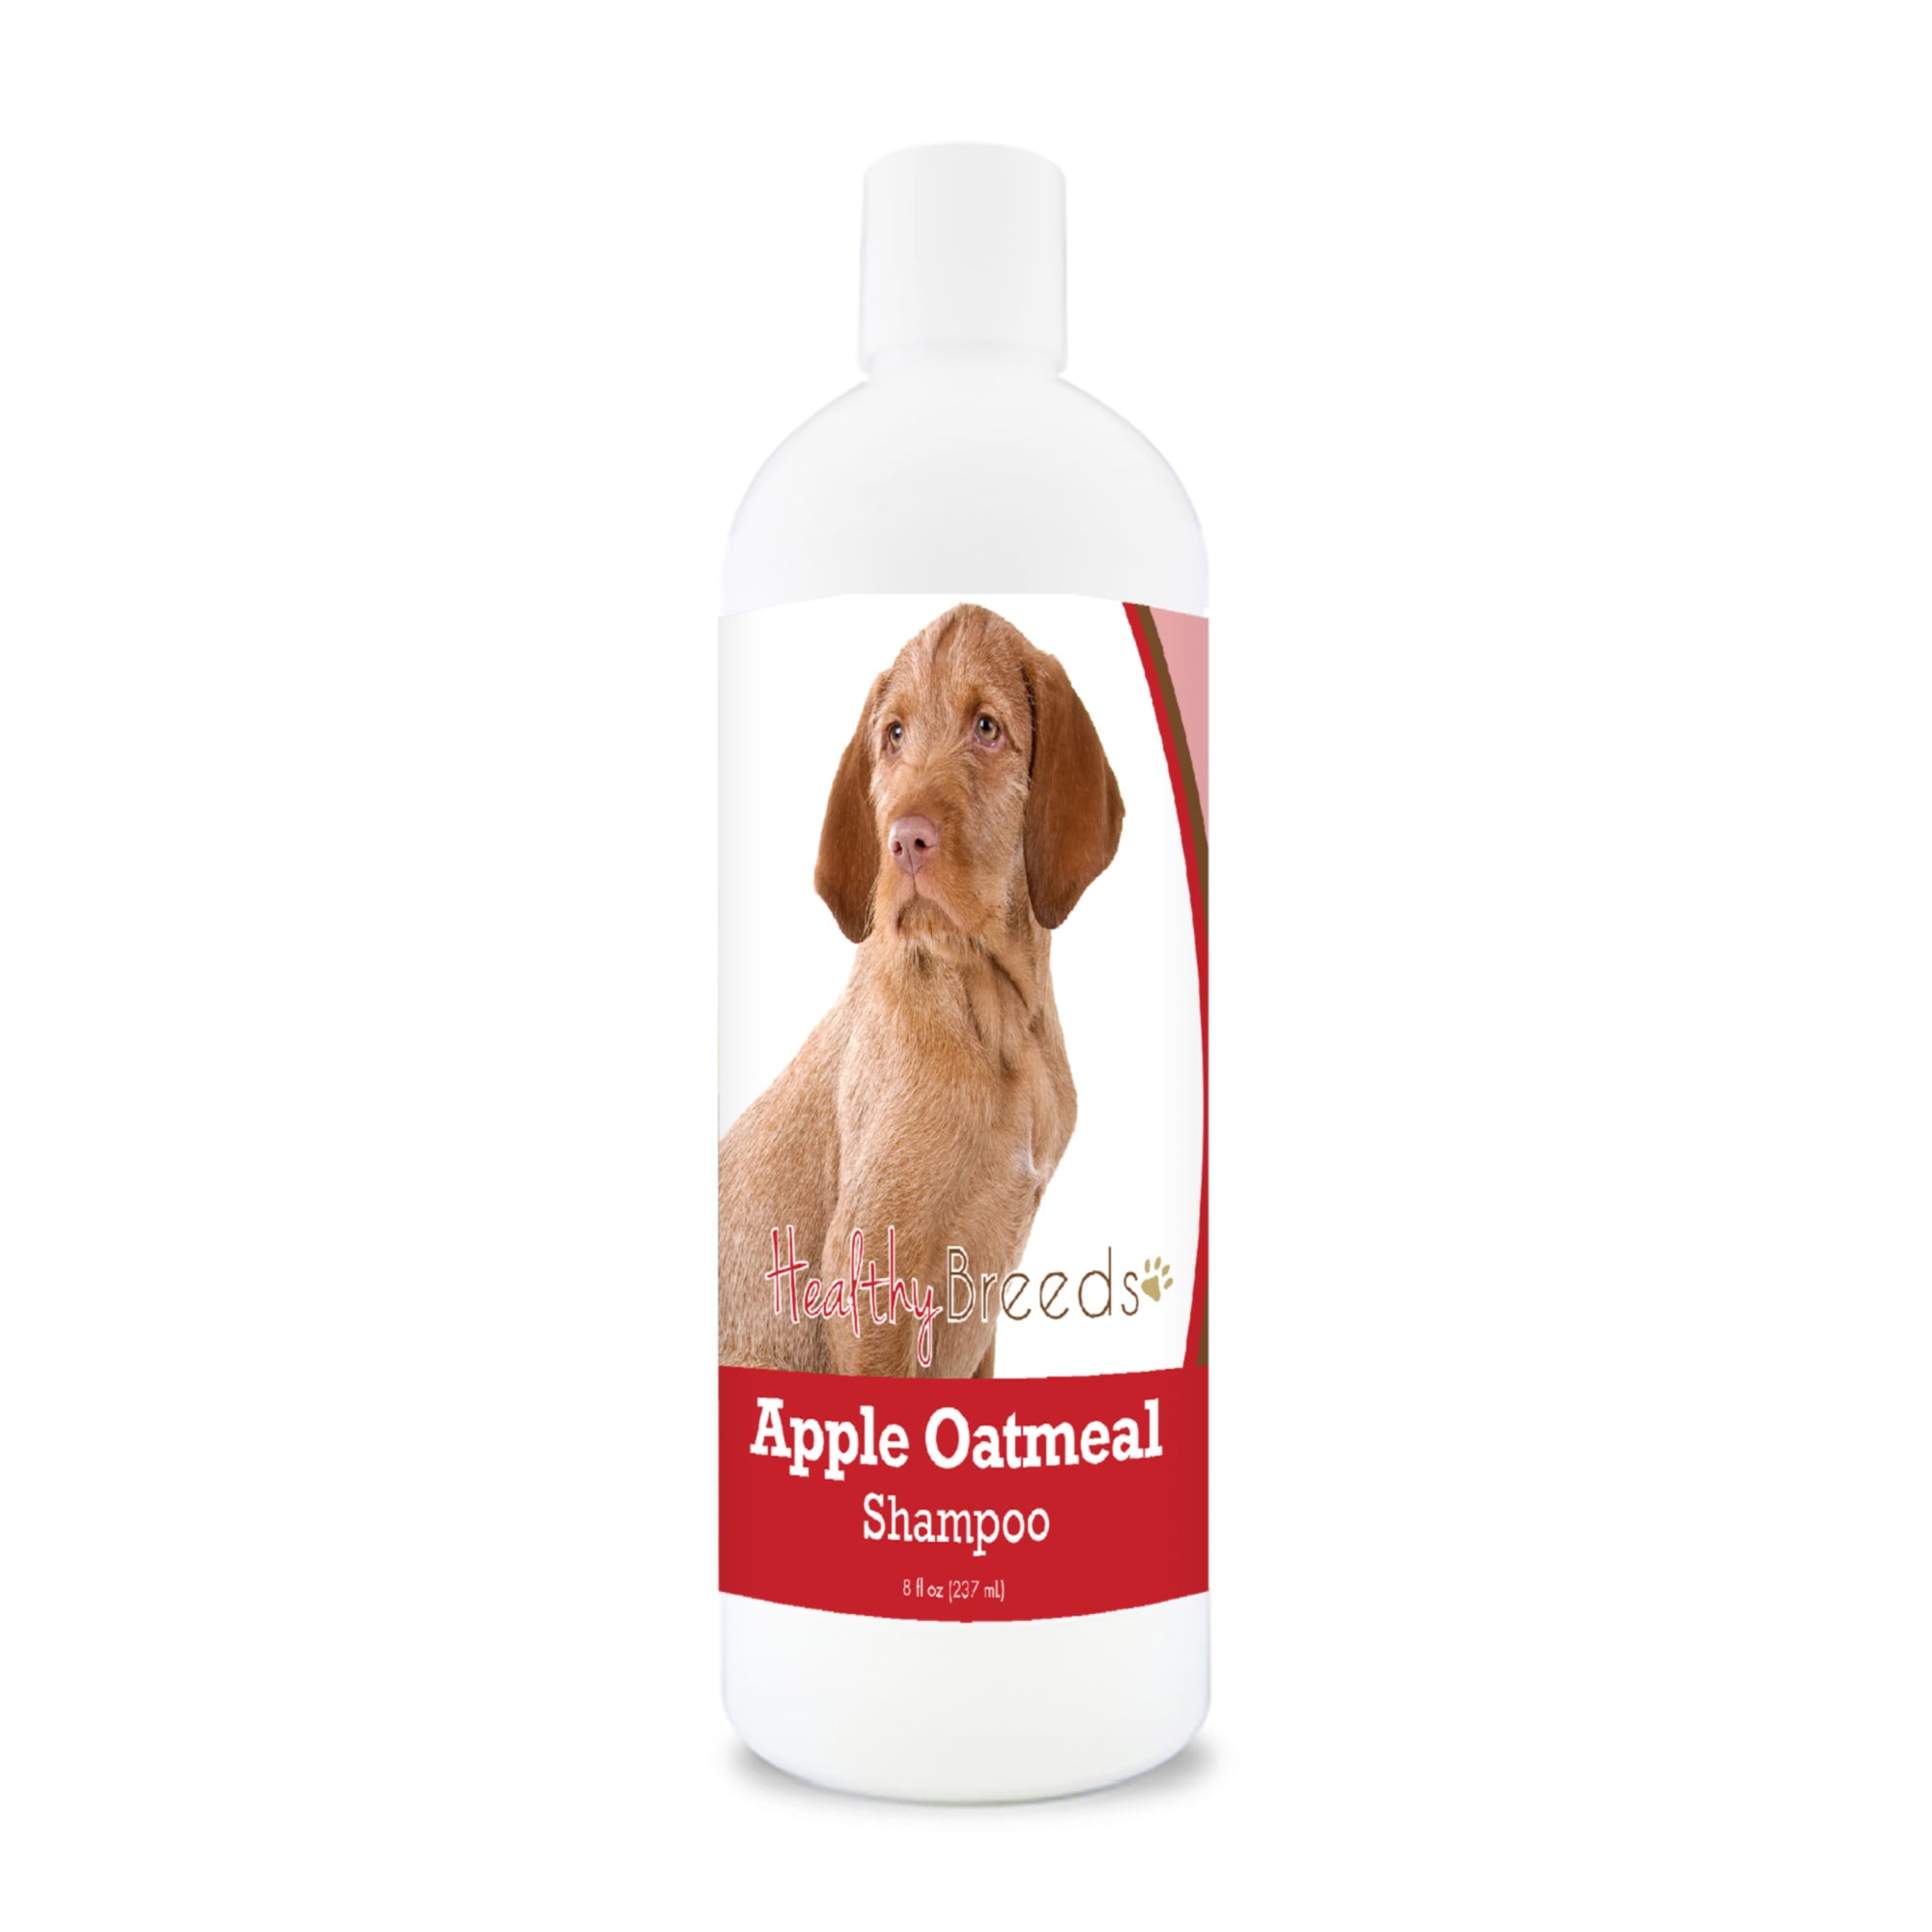 Wirehaired Vizsla Apple Oatmeal Shampoo 8 oz